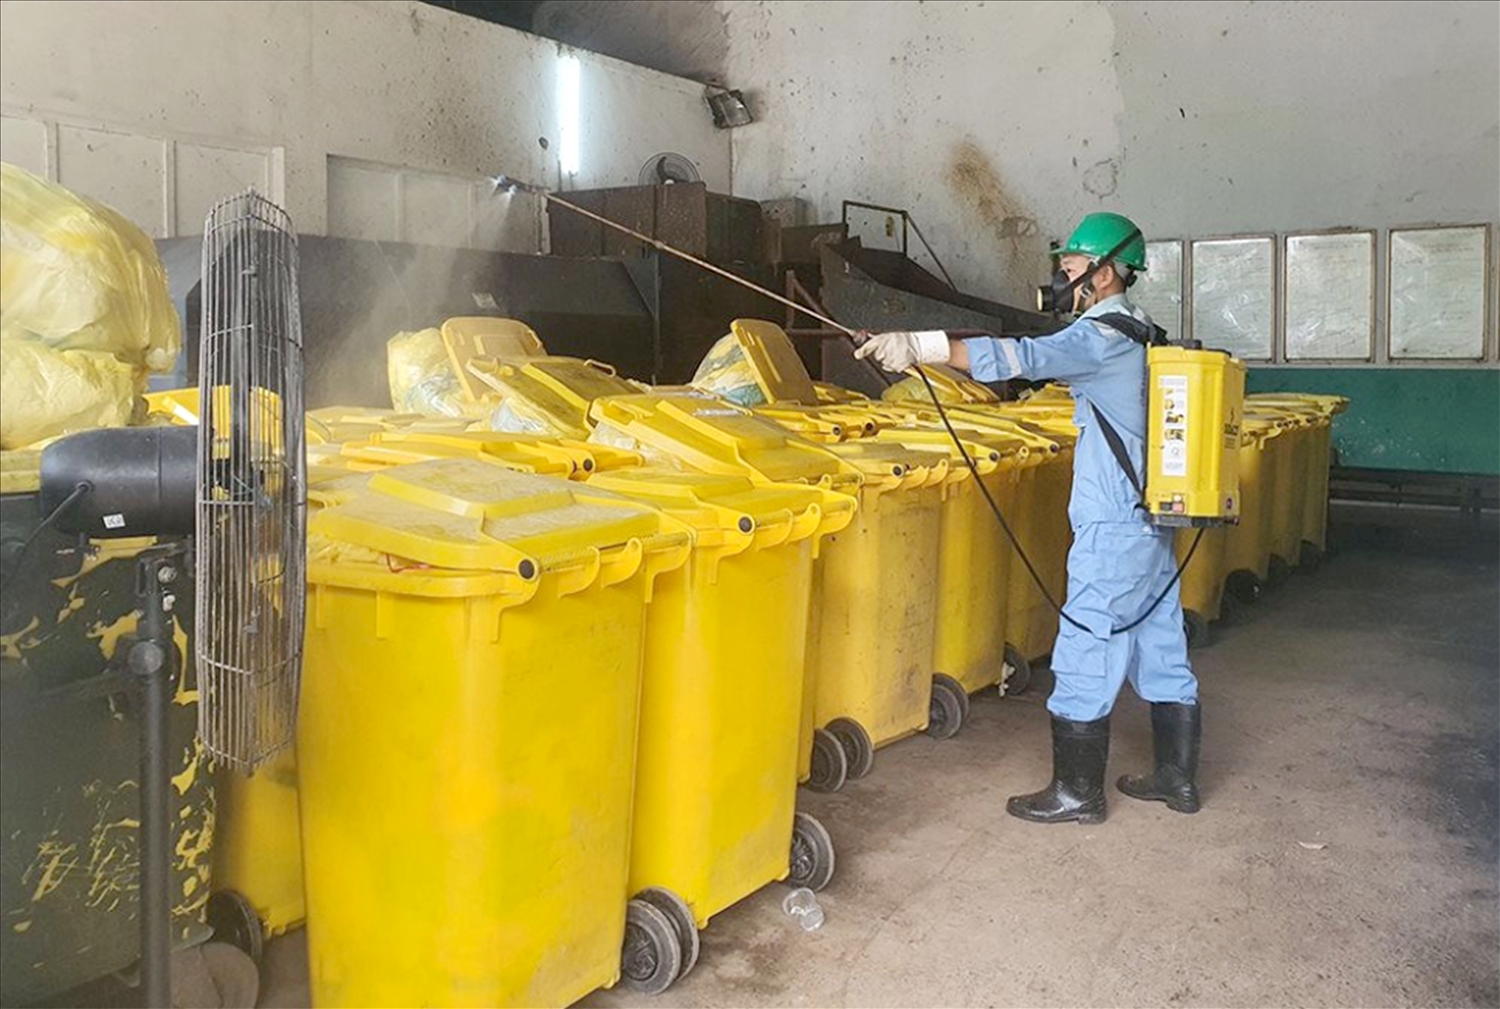 Quá trình thu gom, xử lý rác thải tại khu cách ly đều tuân thủ đúng hướng dẫn của Bộ Y tế.